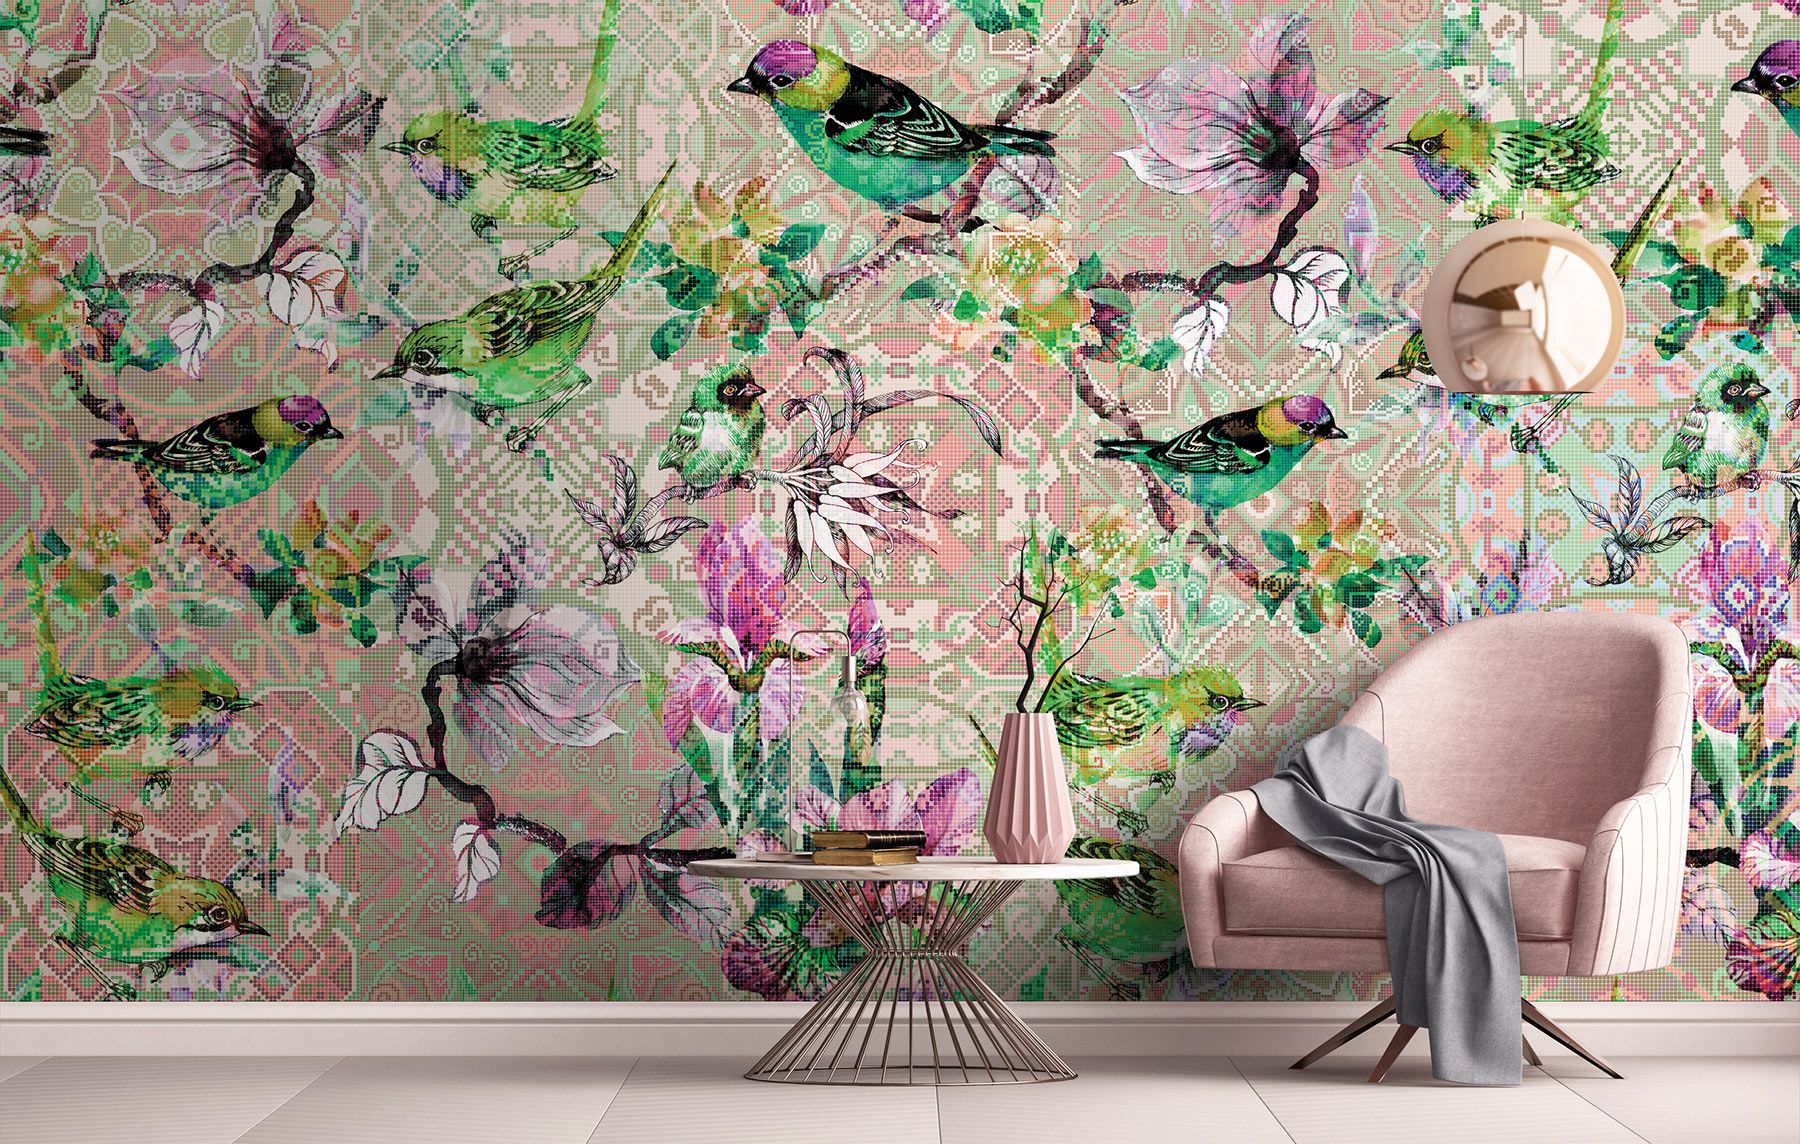 Papier peint 3D rose fleur de cerisier autocollant mural Art décor à la  maison graphique fleurs pétales arbre 